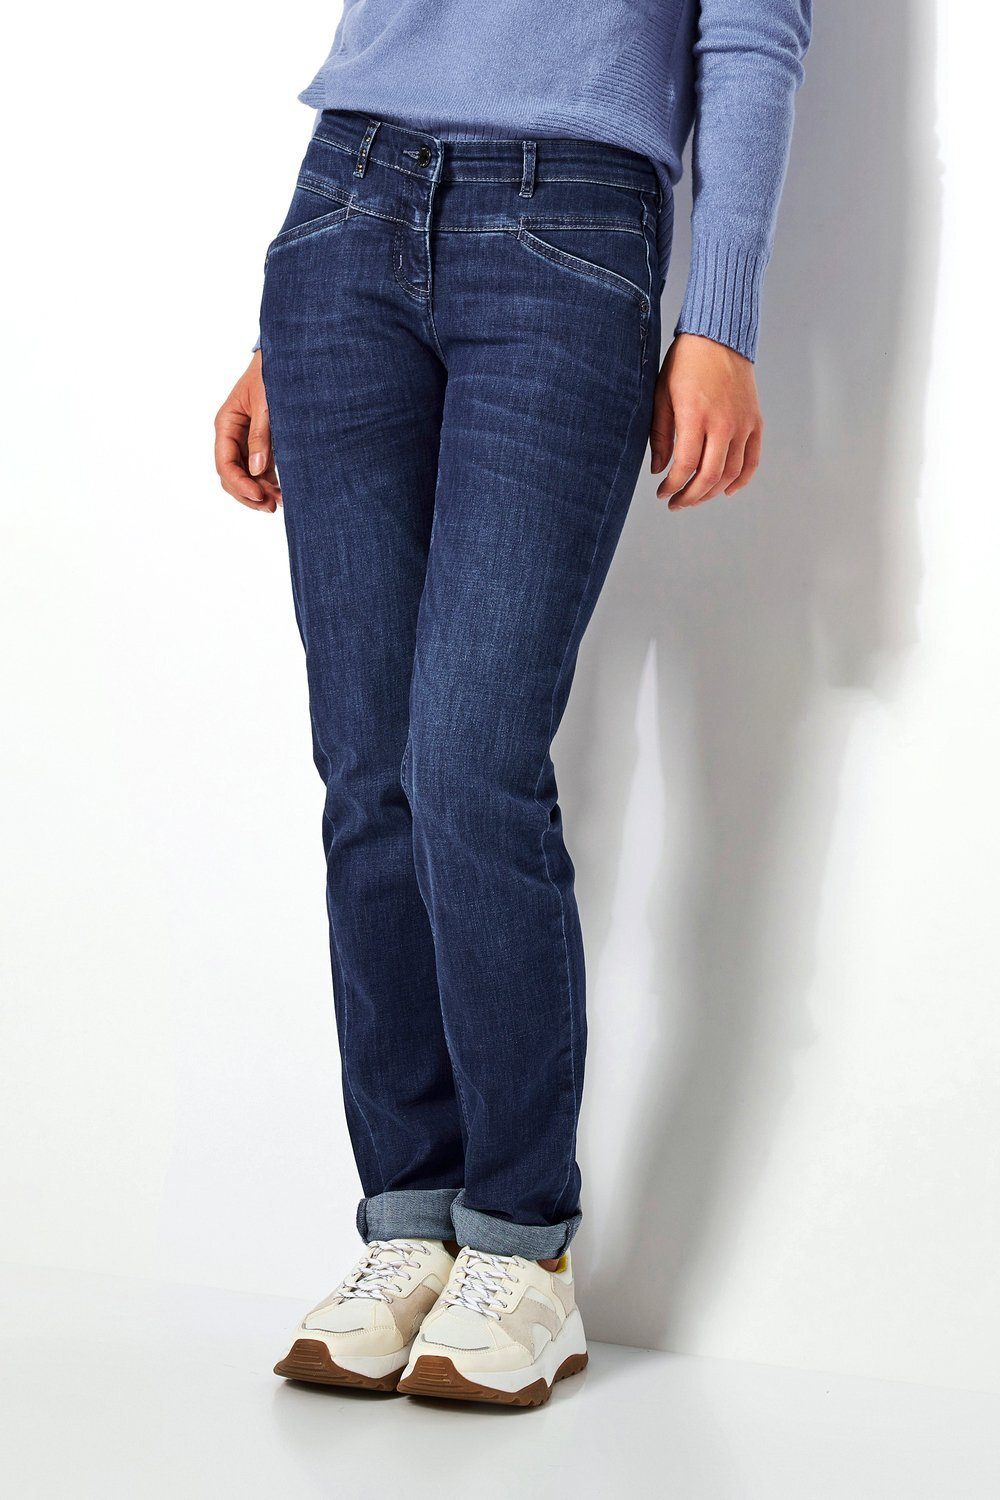 TONI Slim-fit-Jeans 564 mittelblau Shape mit vorne - Perfect Hüftsattel